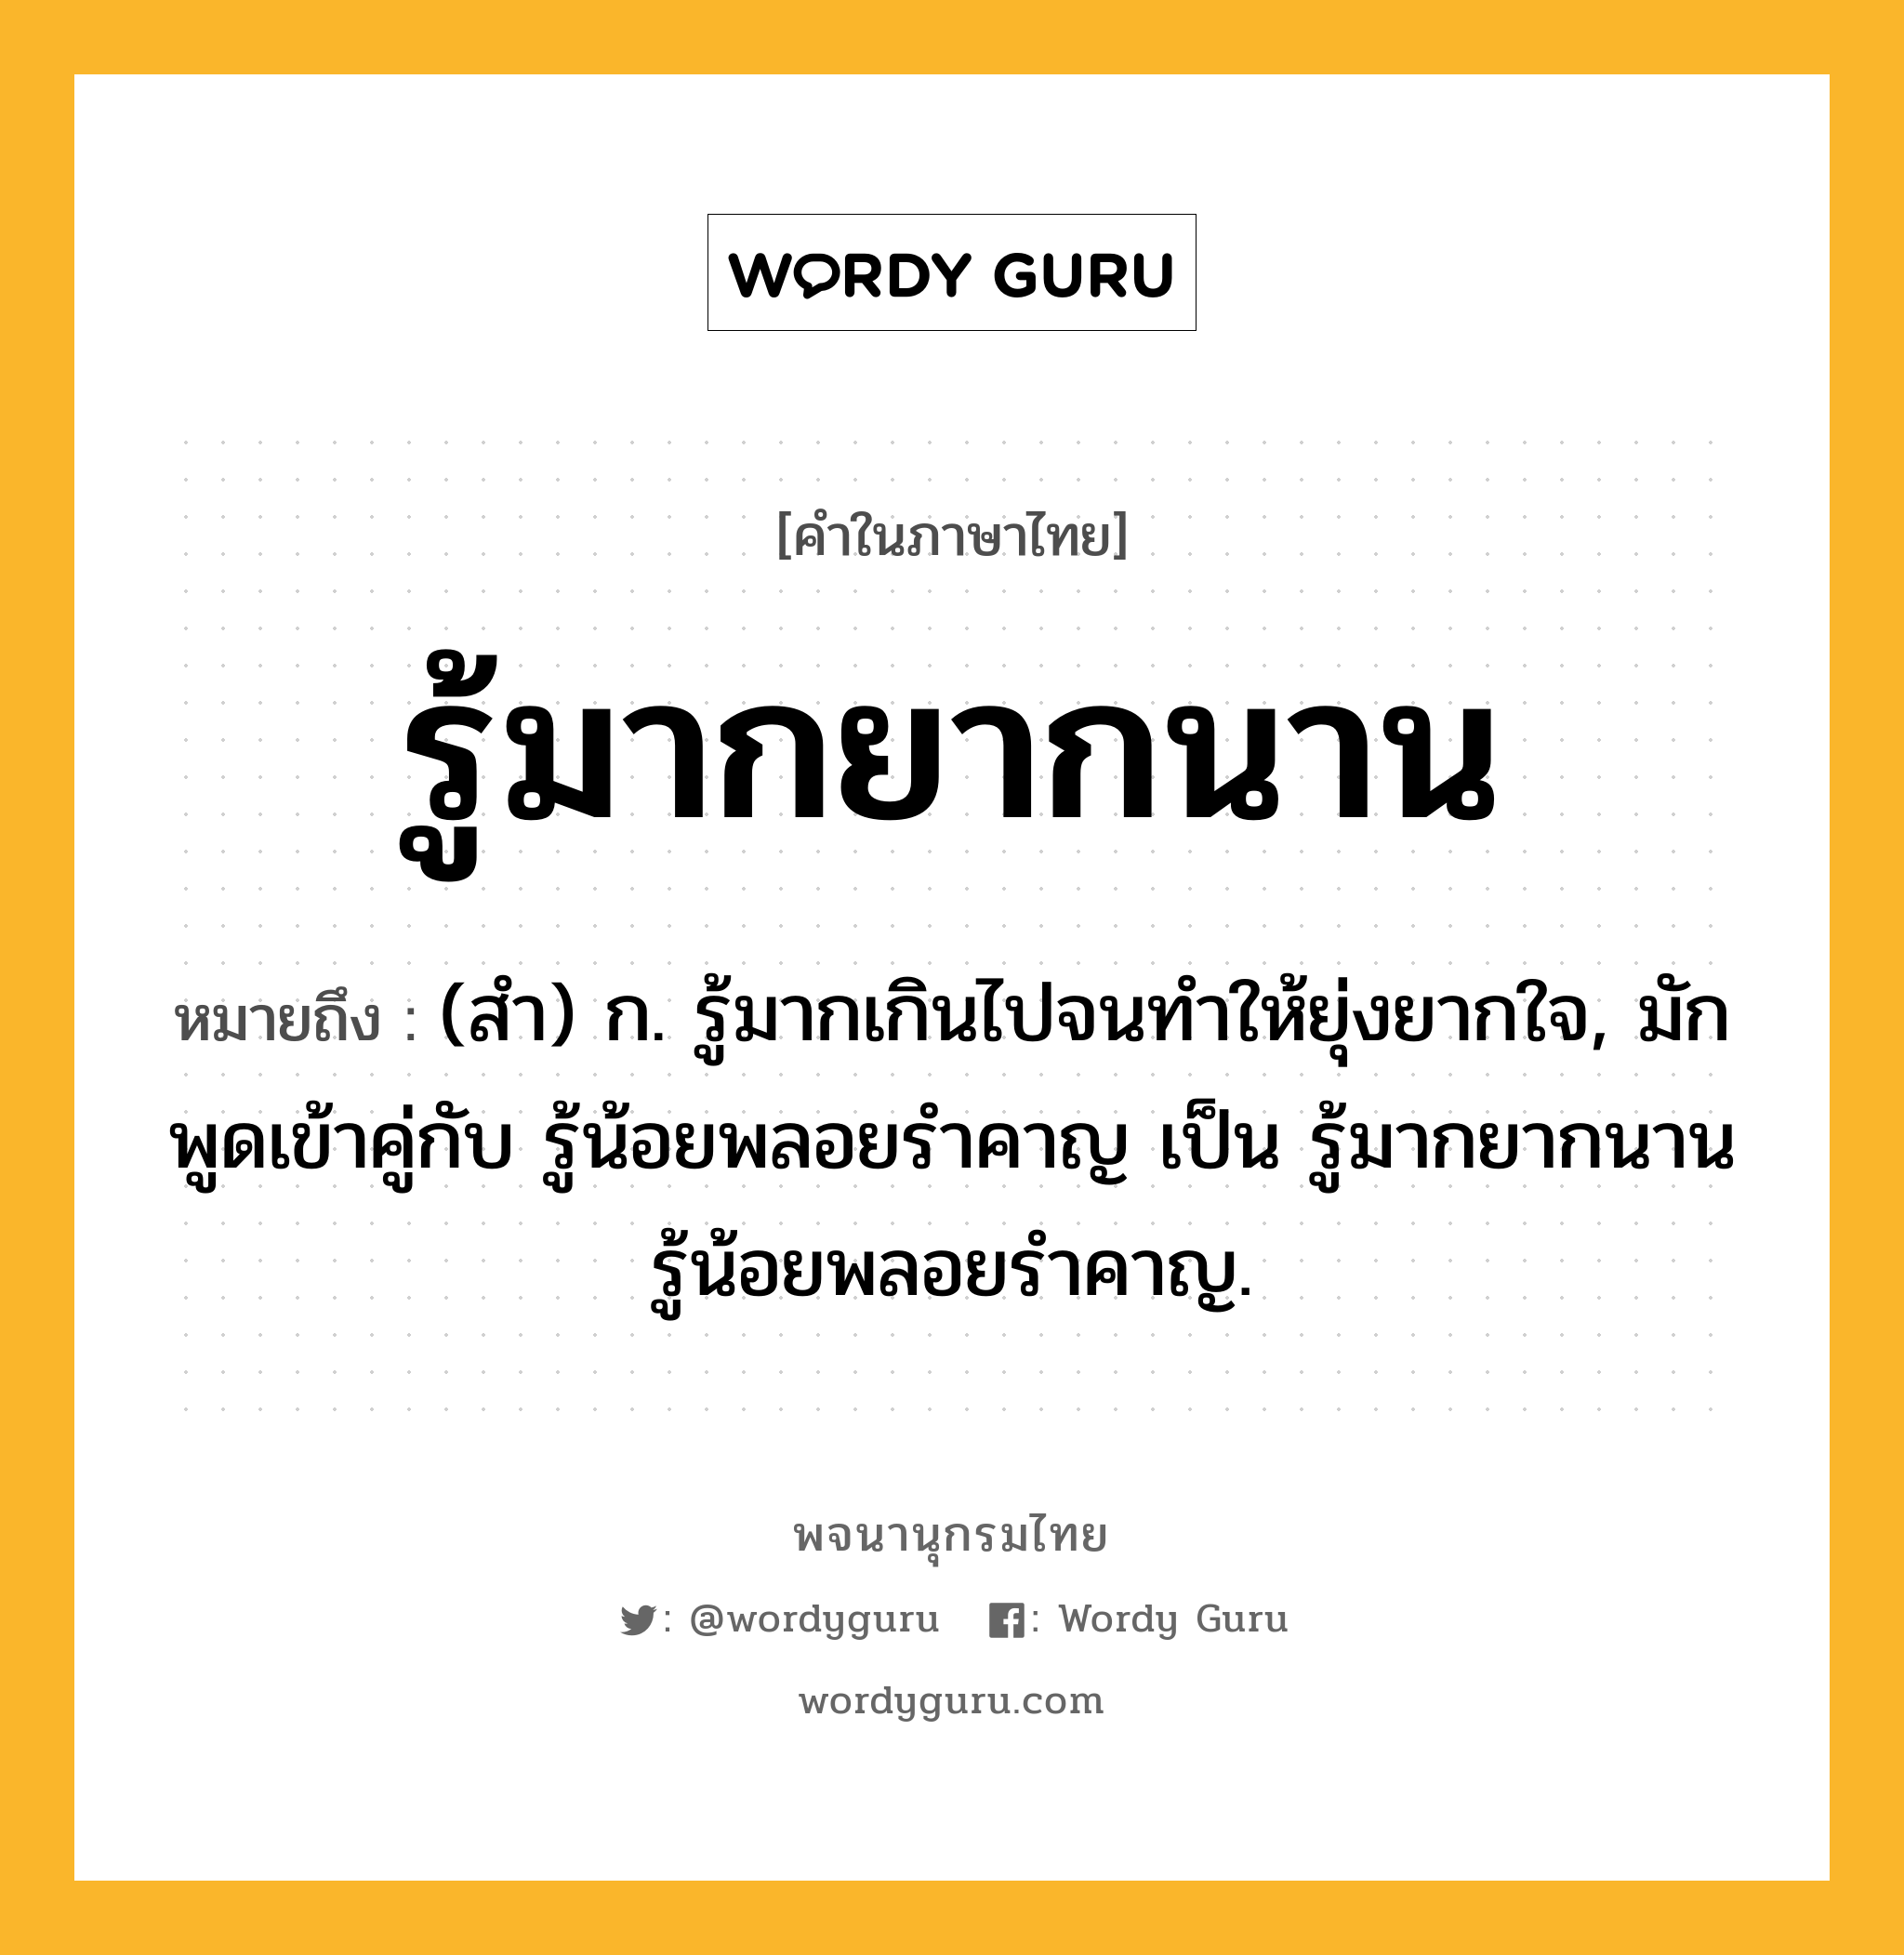 รู้มากยากนาน ความหมาย หมายถึงอะไร?, คำในภาษาไทย รู้มากยากนาน หมายถึง (สํา) ก. รู้มากเกินไปจนทําให้ยุ่งยากใจ, มักพูดเข้าคู่กับ รู้น้อยพลอยรําคาญ เป็น รู้มากยากนาน รู้น้อยพลอยรําคาญ.